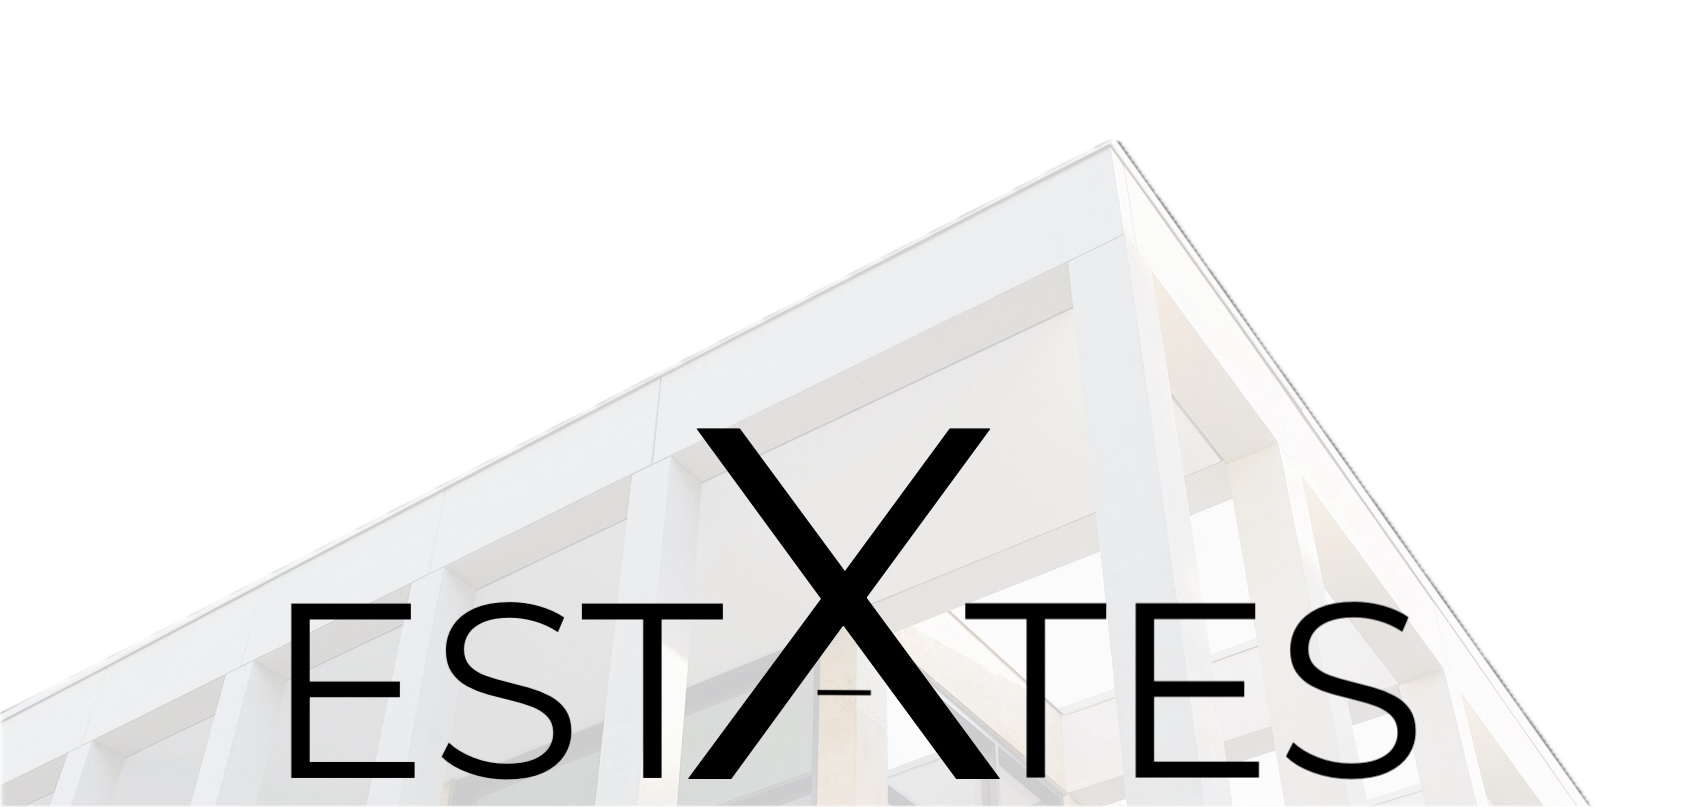 x estates logo klein